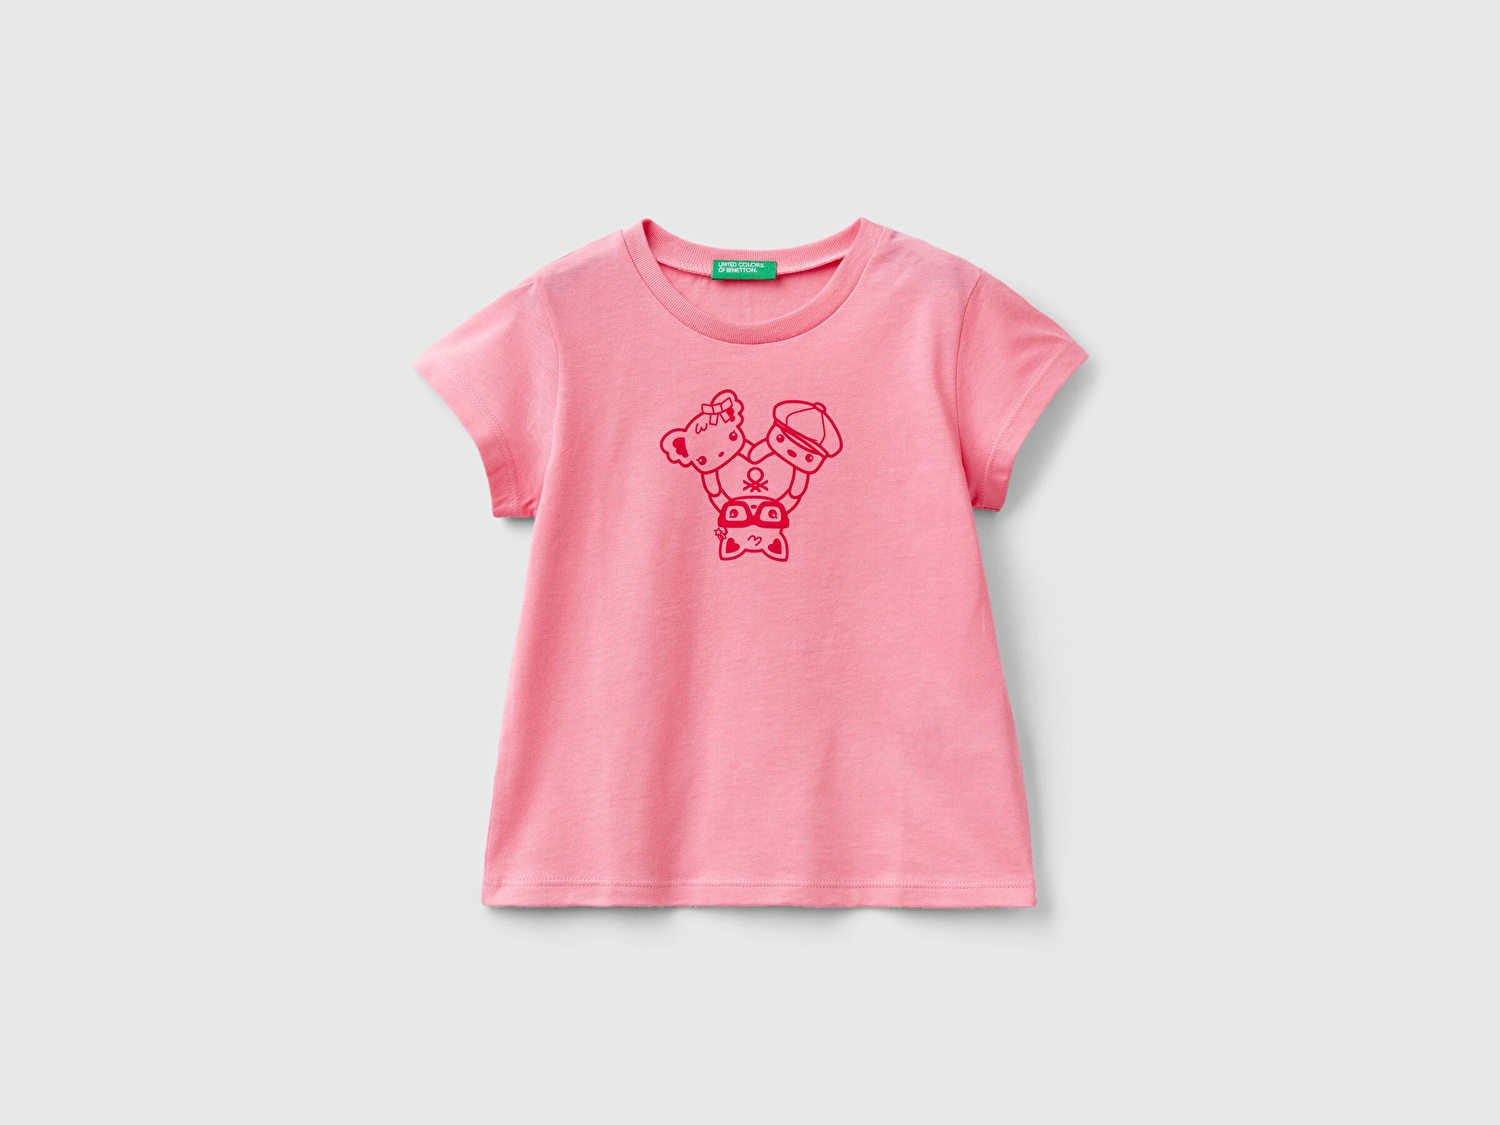 Benetton Kız Çocuk Pembe Su Baskılı Logolu T-Shirt